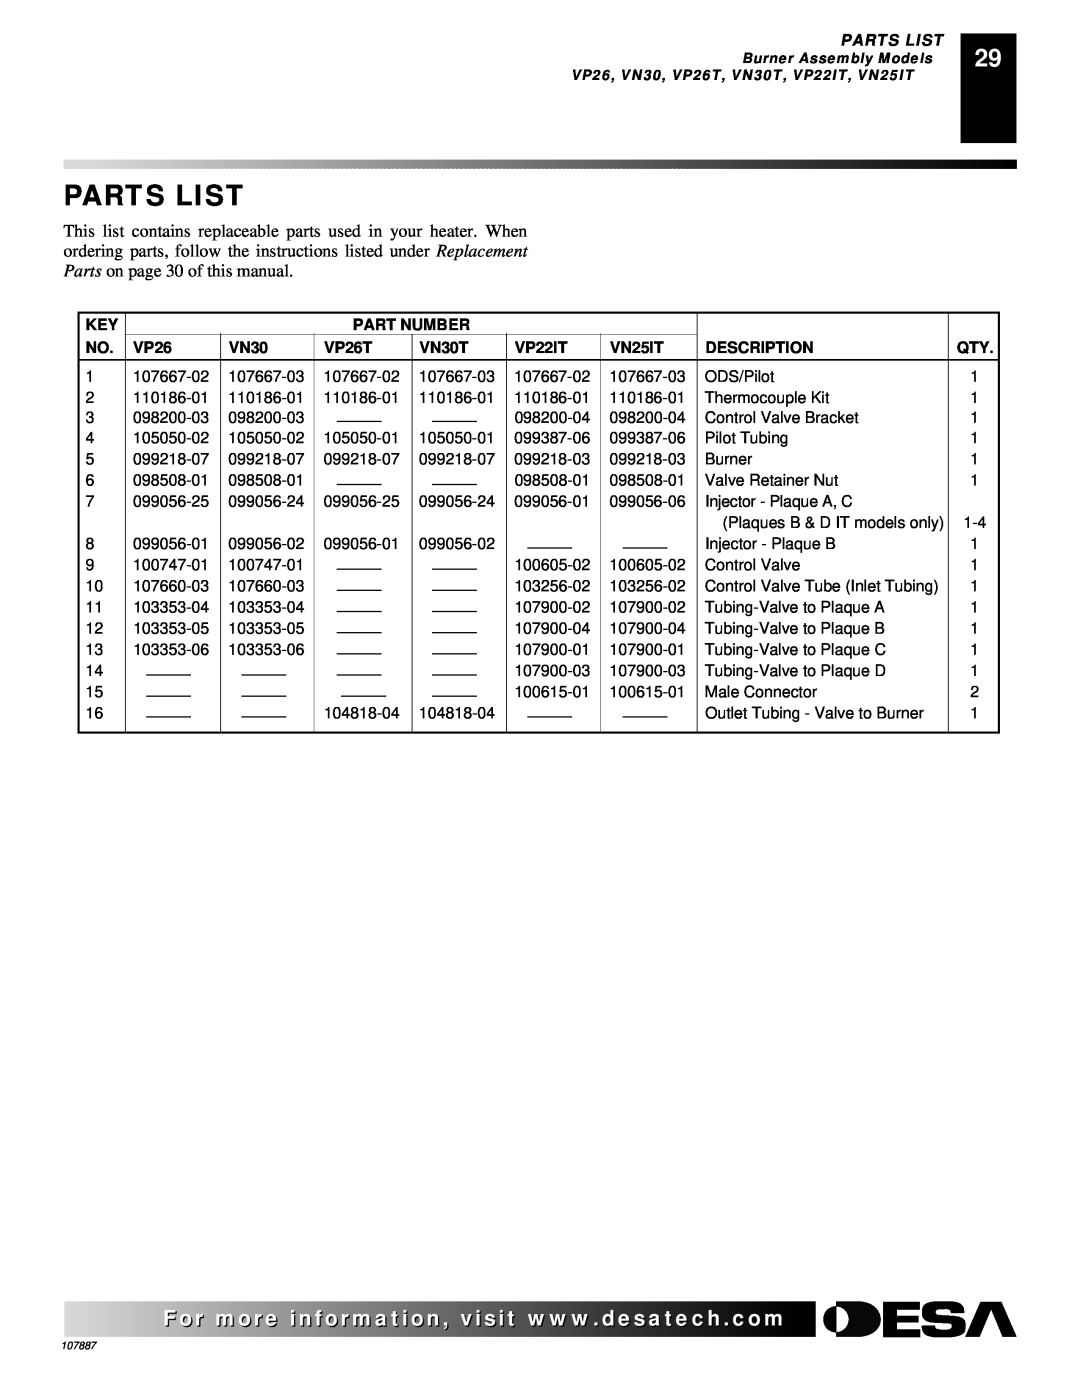 Vanguard Heating VP22IT, VP16T, VN18T, VN18IT, VP16IT Parts List, Part Number, VP26T, VN30T, VN25IT, Description 